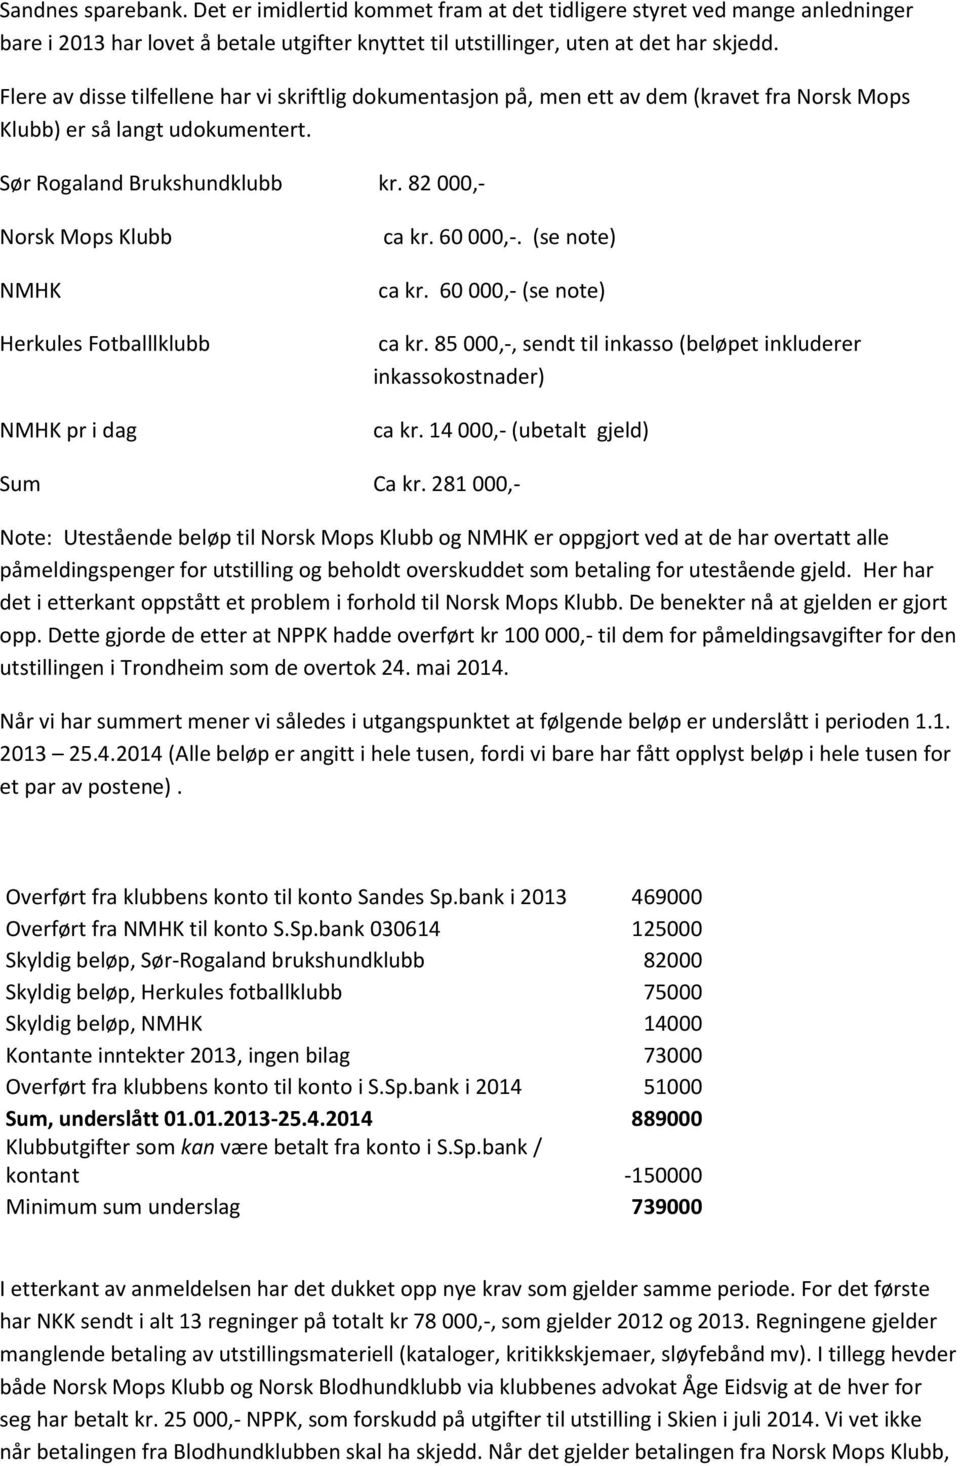 82 000,- Norsk Mops Klubb NMHK Herkules Fotballlklubb NMHK pr i dag ca kr. 60 000,-. (se note) ca kr. 60 000,- (se note) ca kr. 85 000,-, sendt til inkasso (beløpet inkluderer inkassokostnader) ca kr.